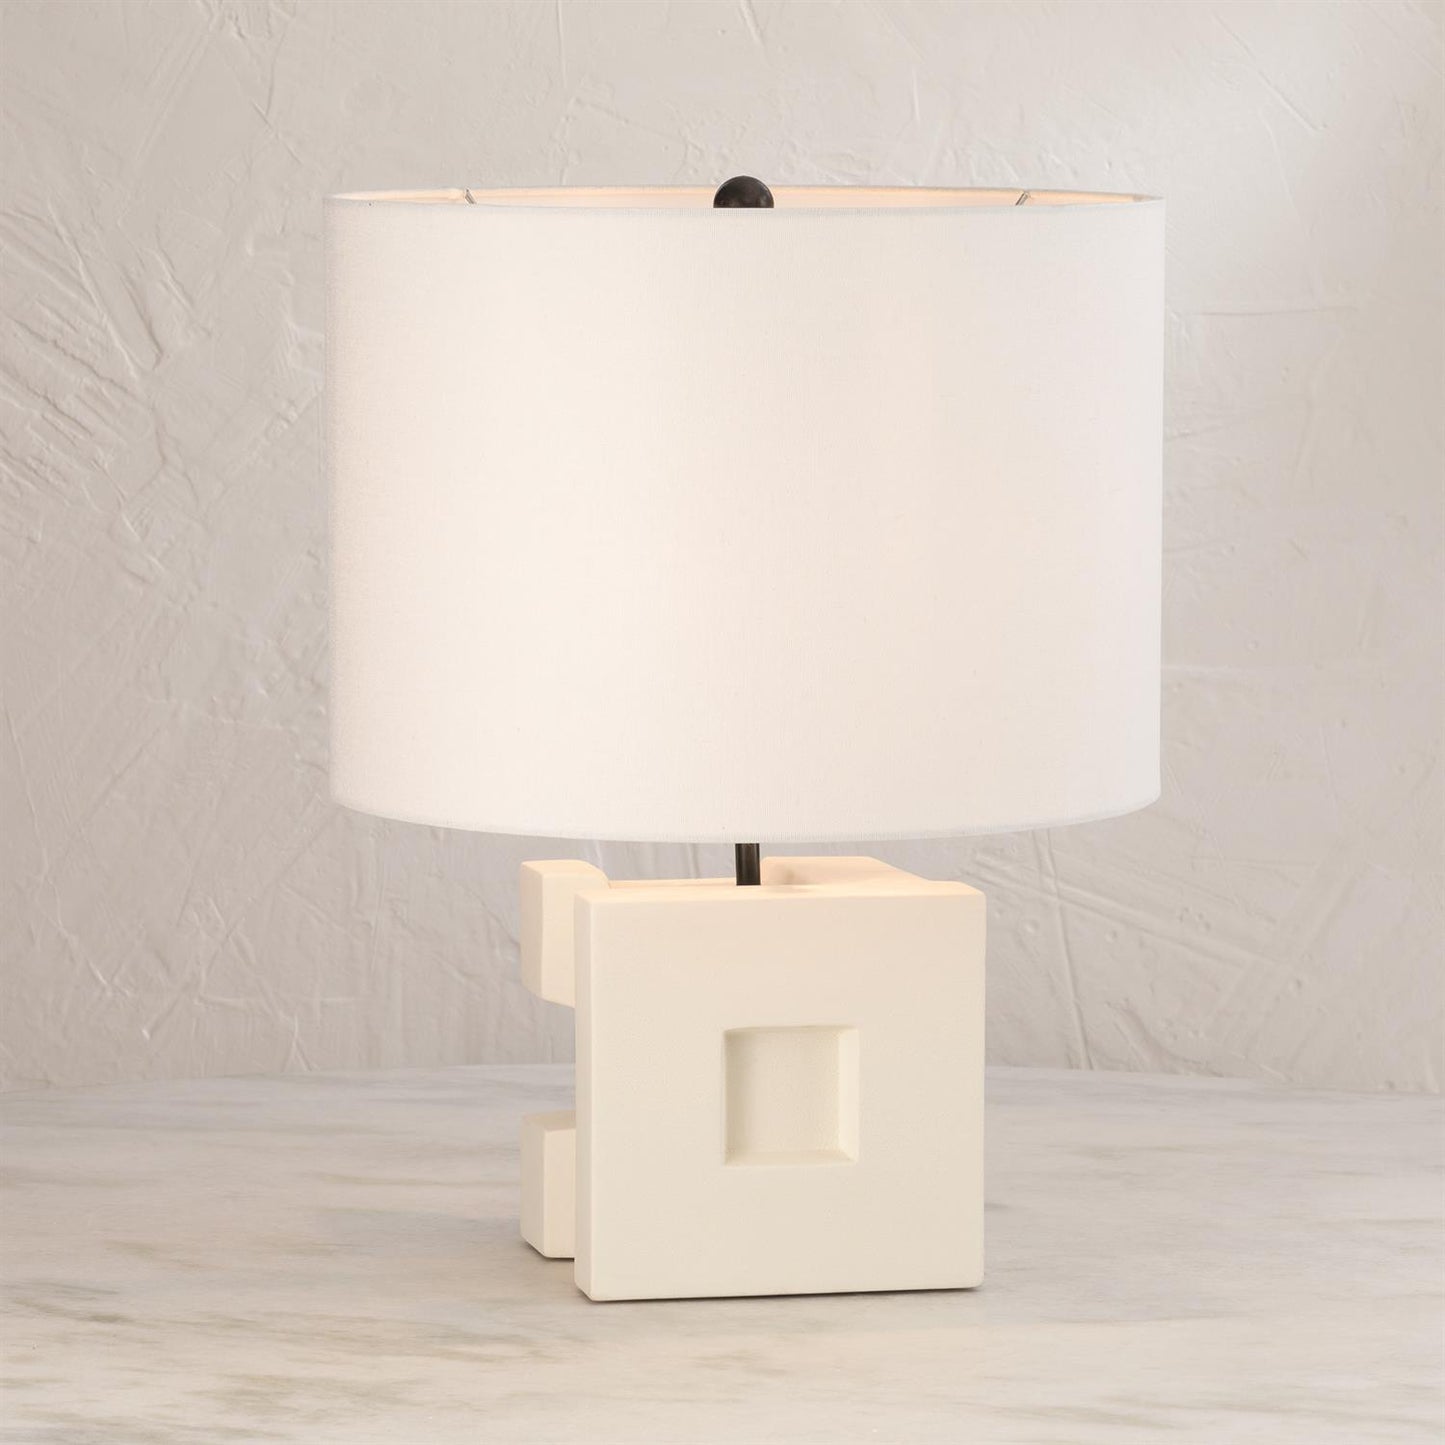 Cubist Ceramic Lamp - Grats Decor Interior Design & Build Inc.